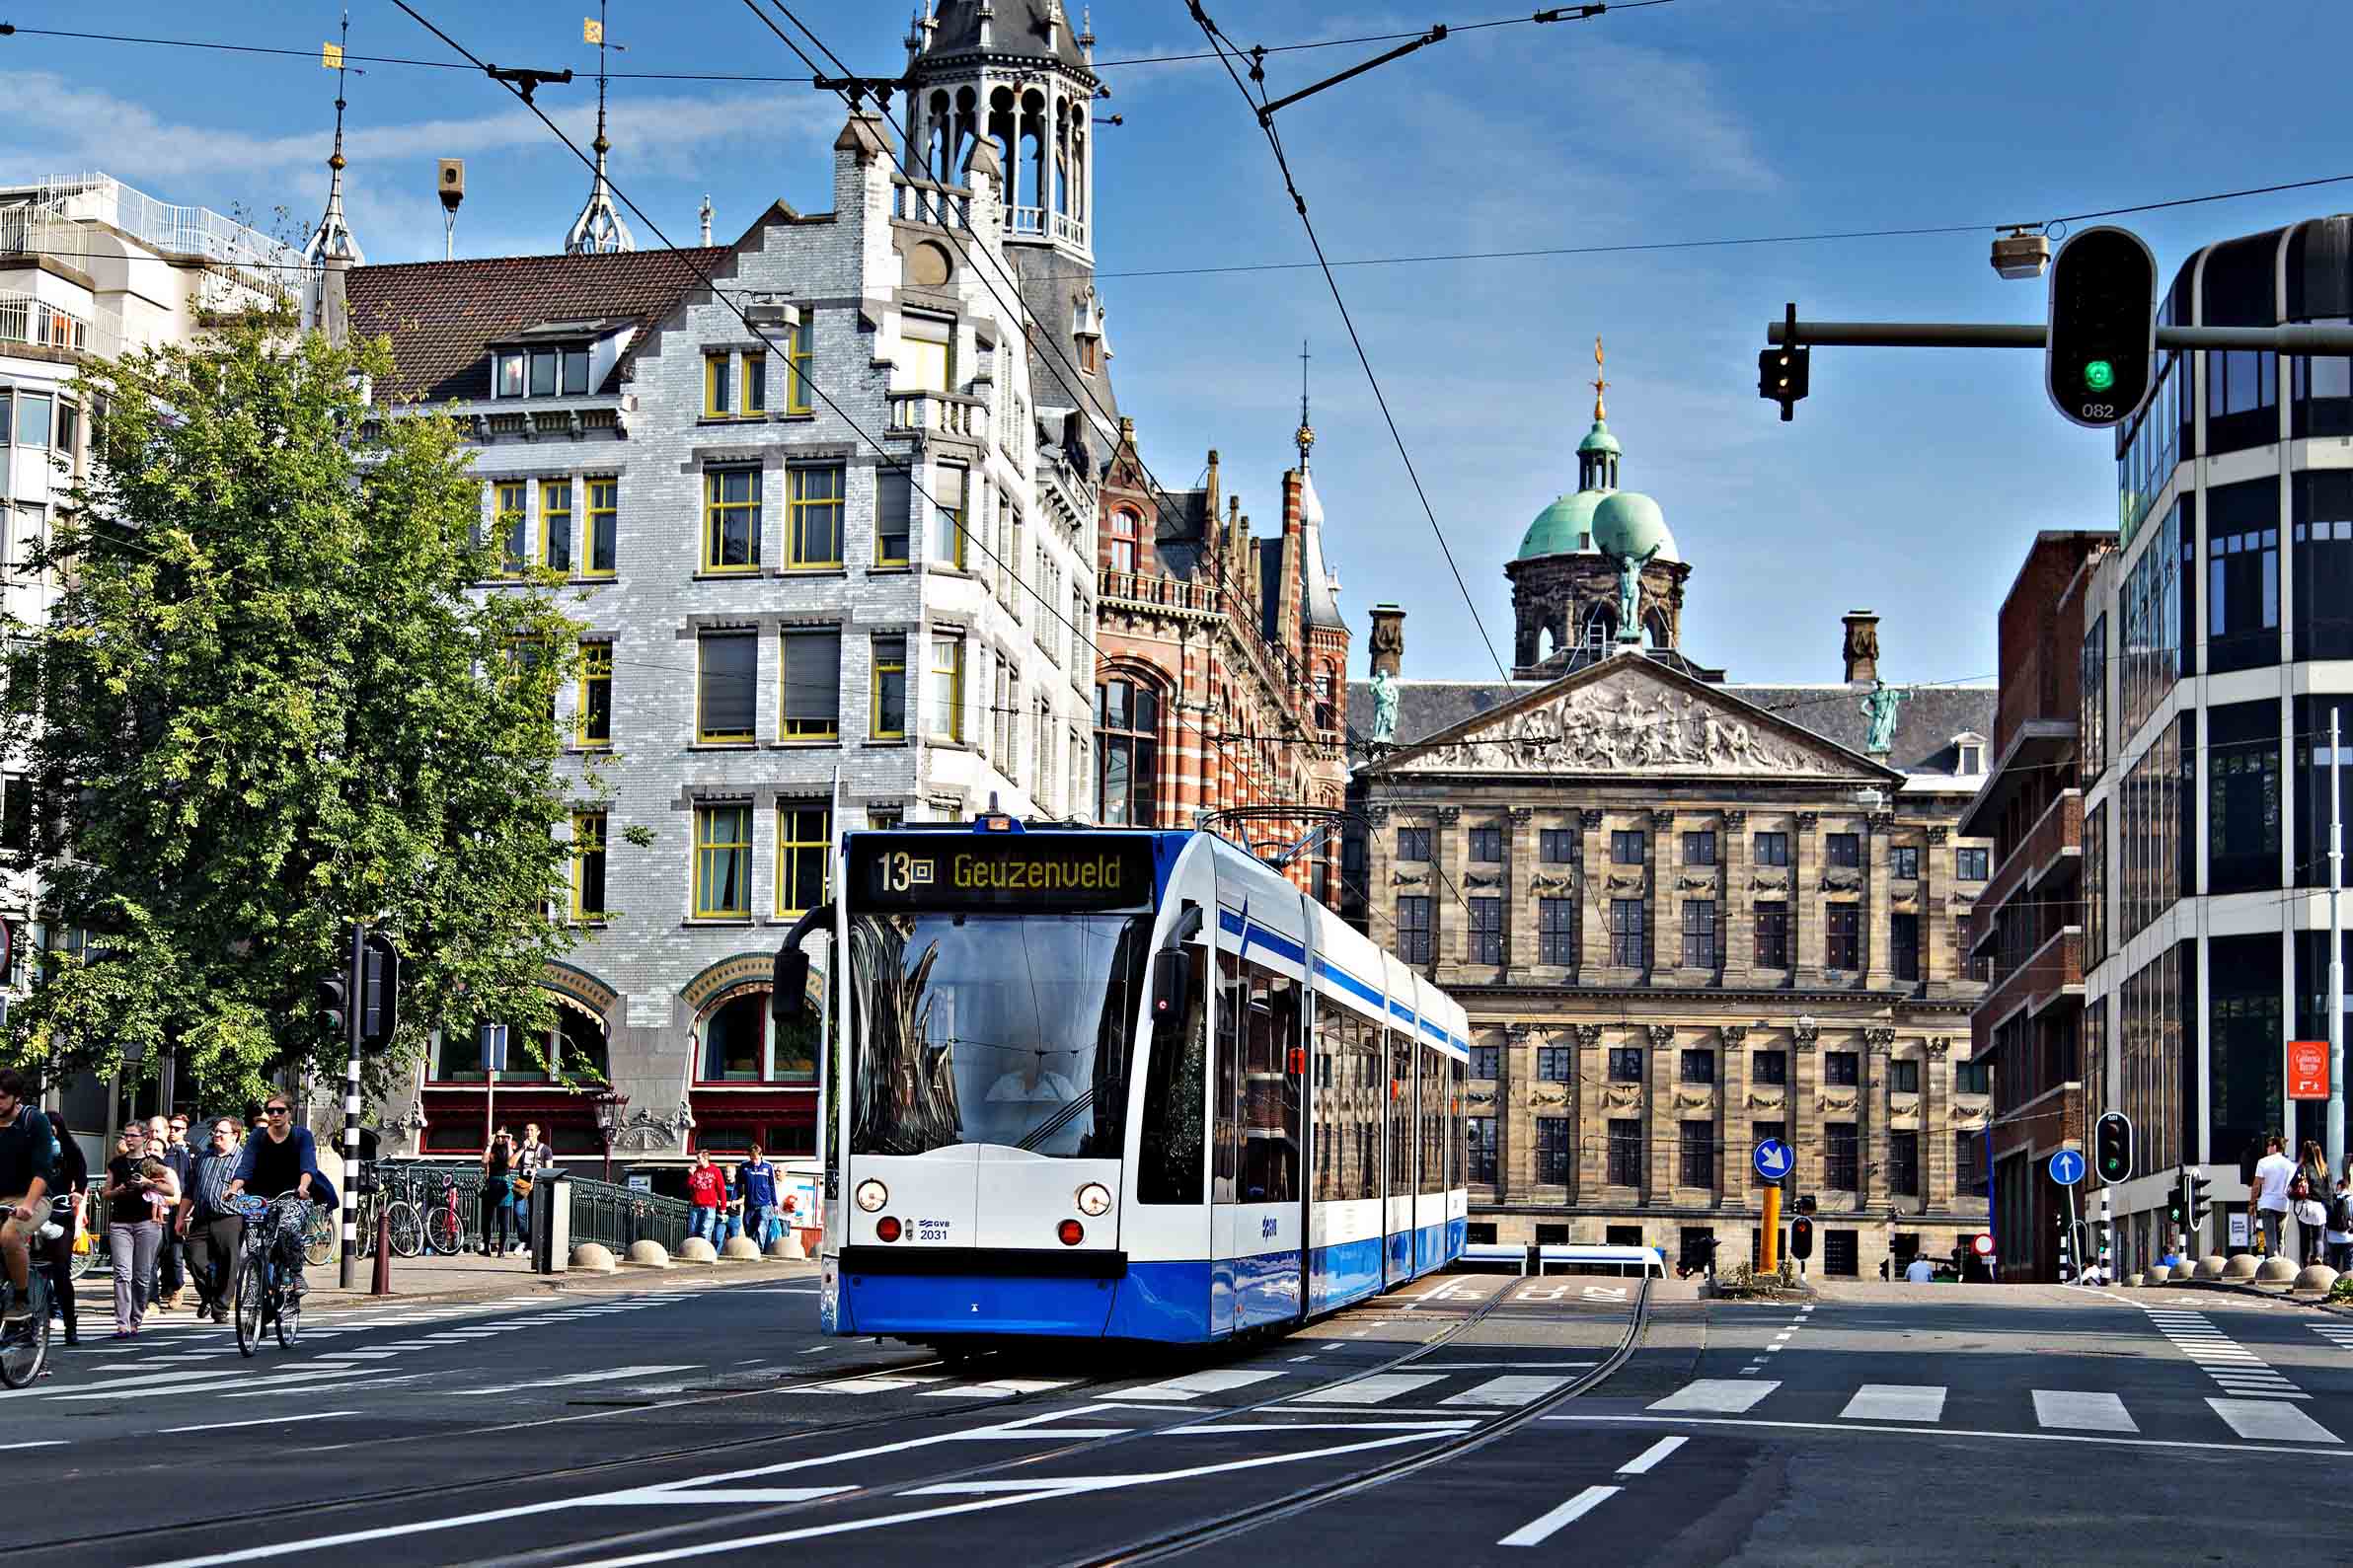 Straßenbahn und Metro in Amsterdam: Energie auch bei Stromausfall - Donnerstag, 08.02.2018